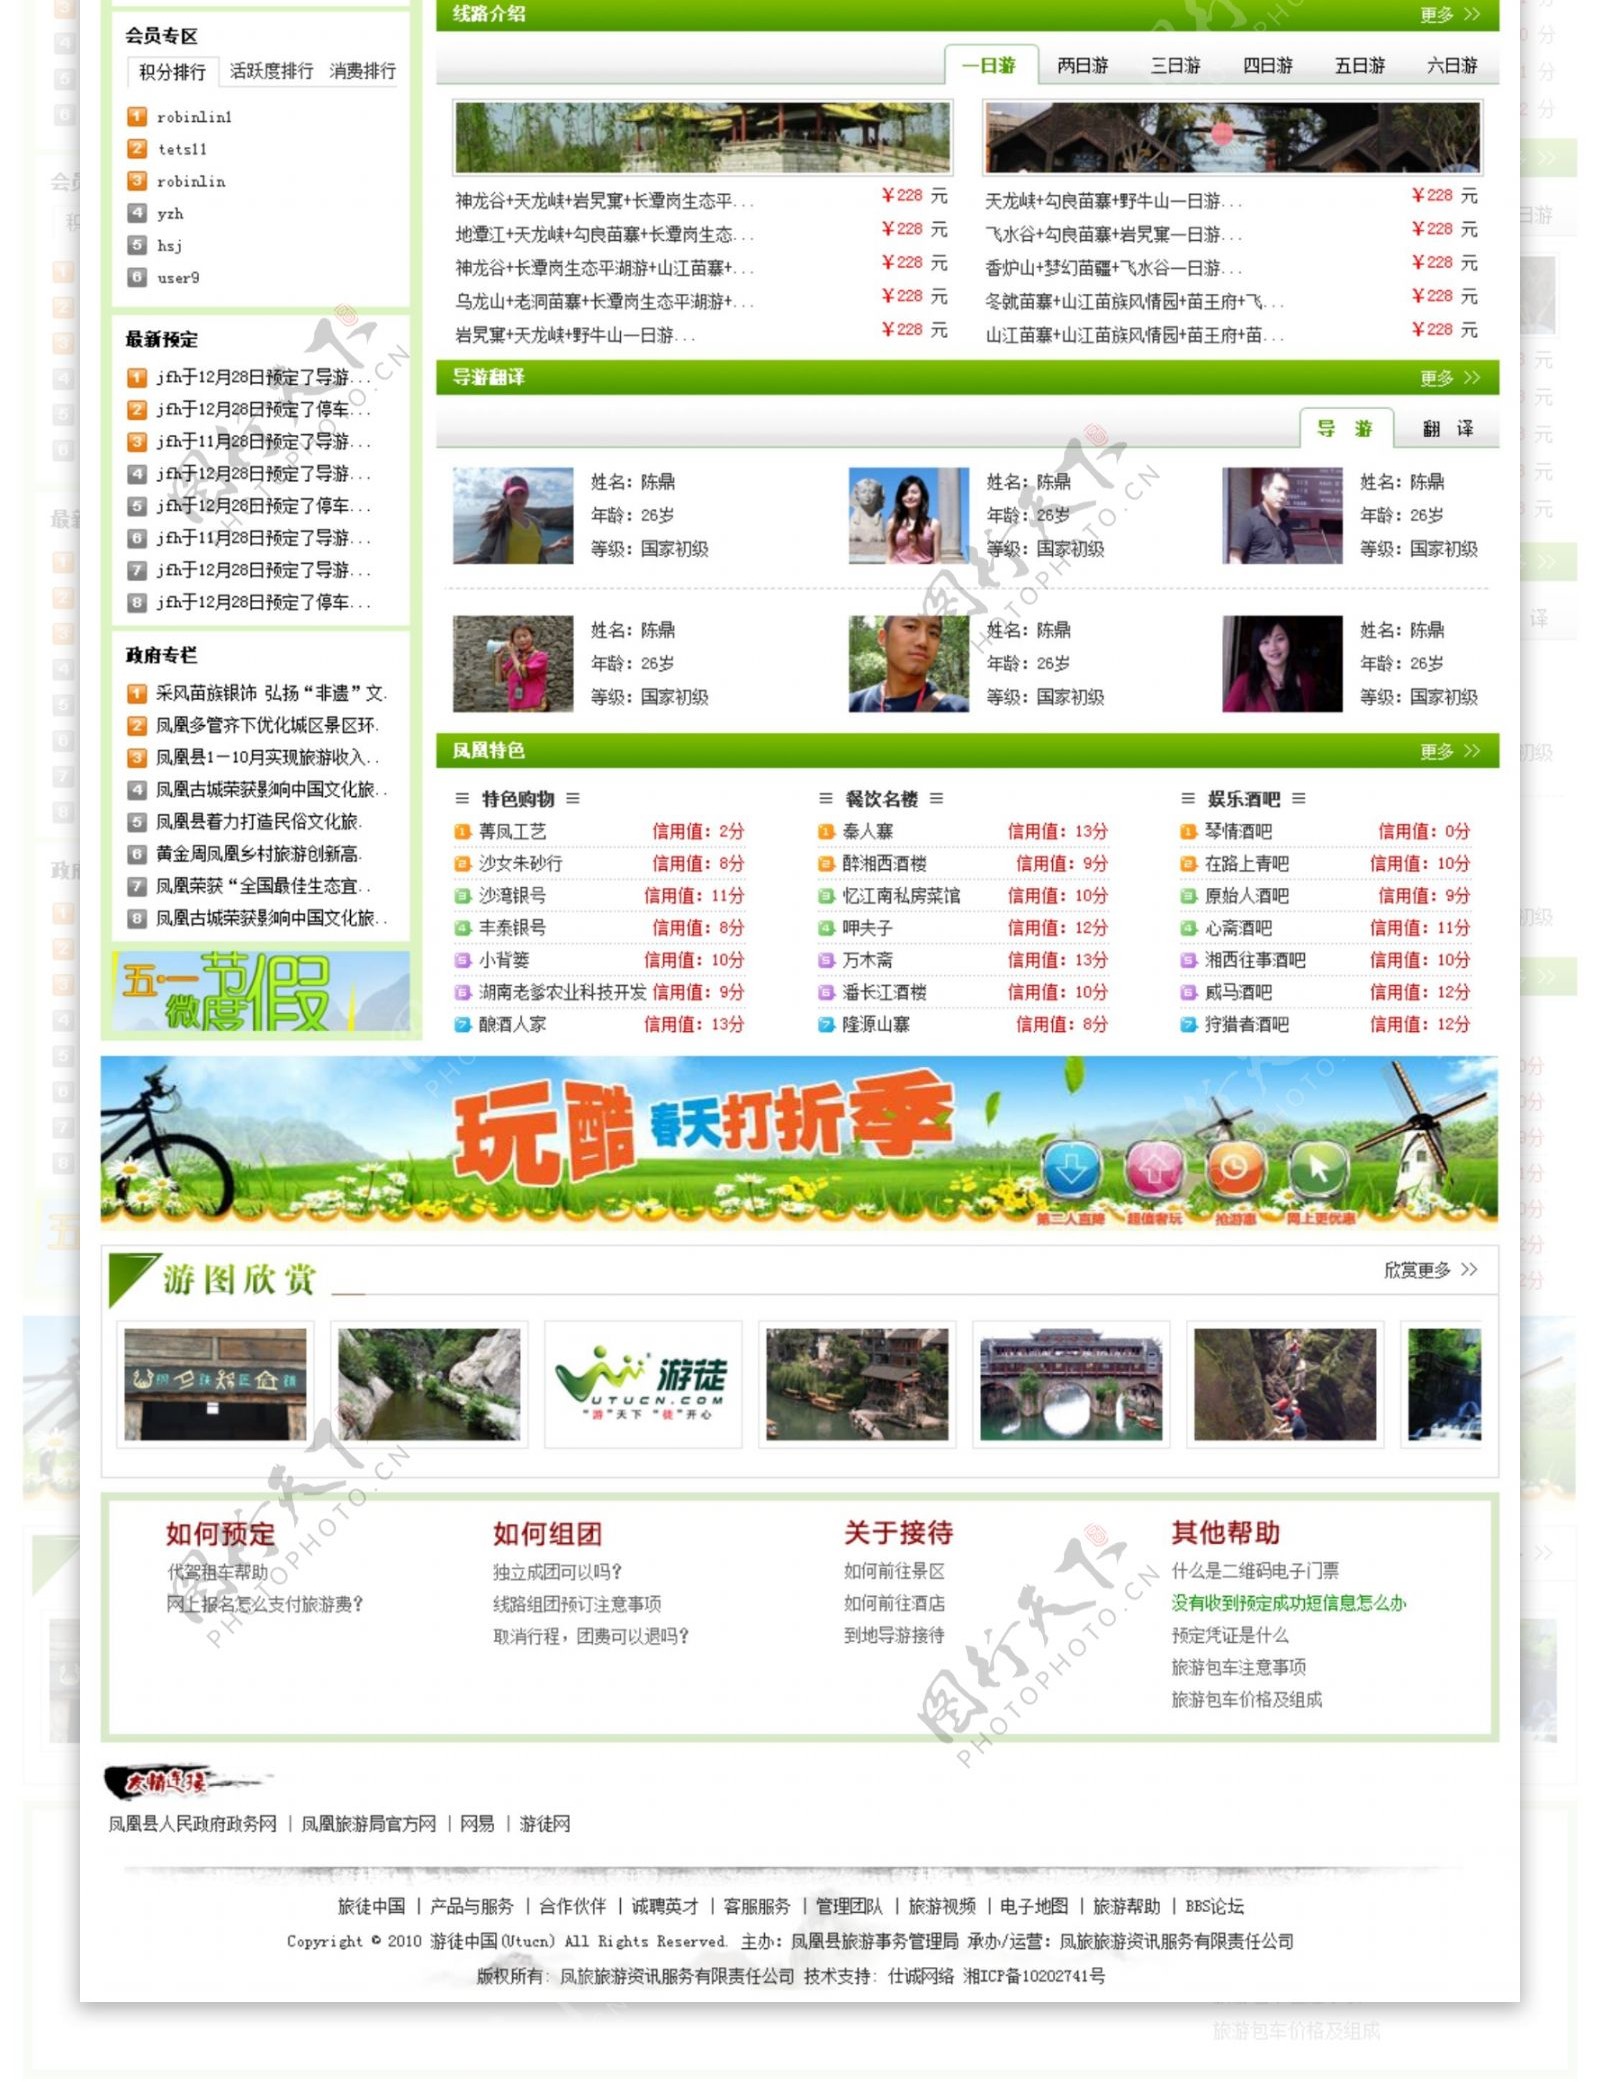 小清新版绿色风格旅游门户网站